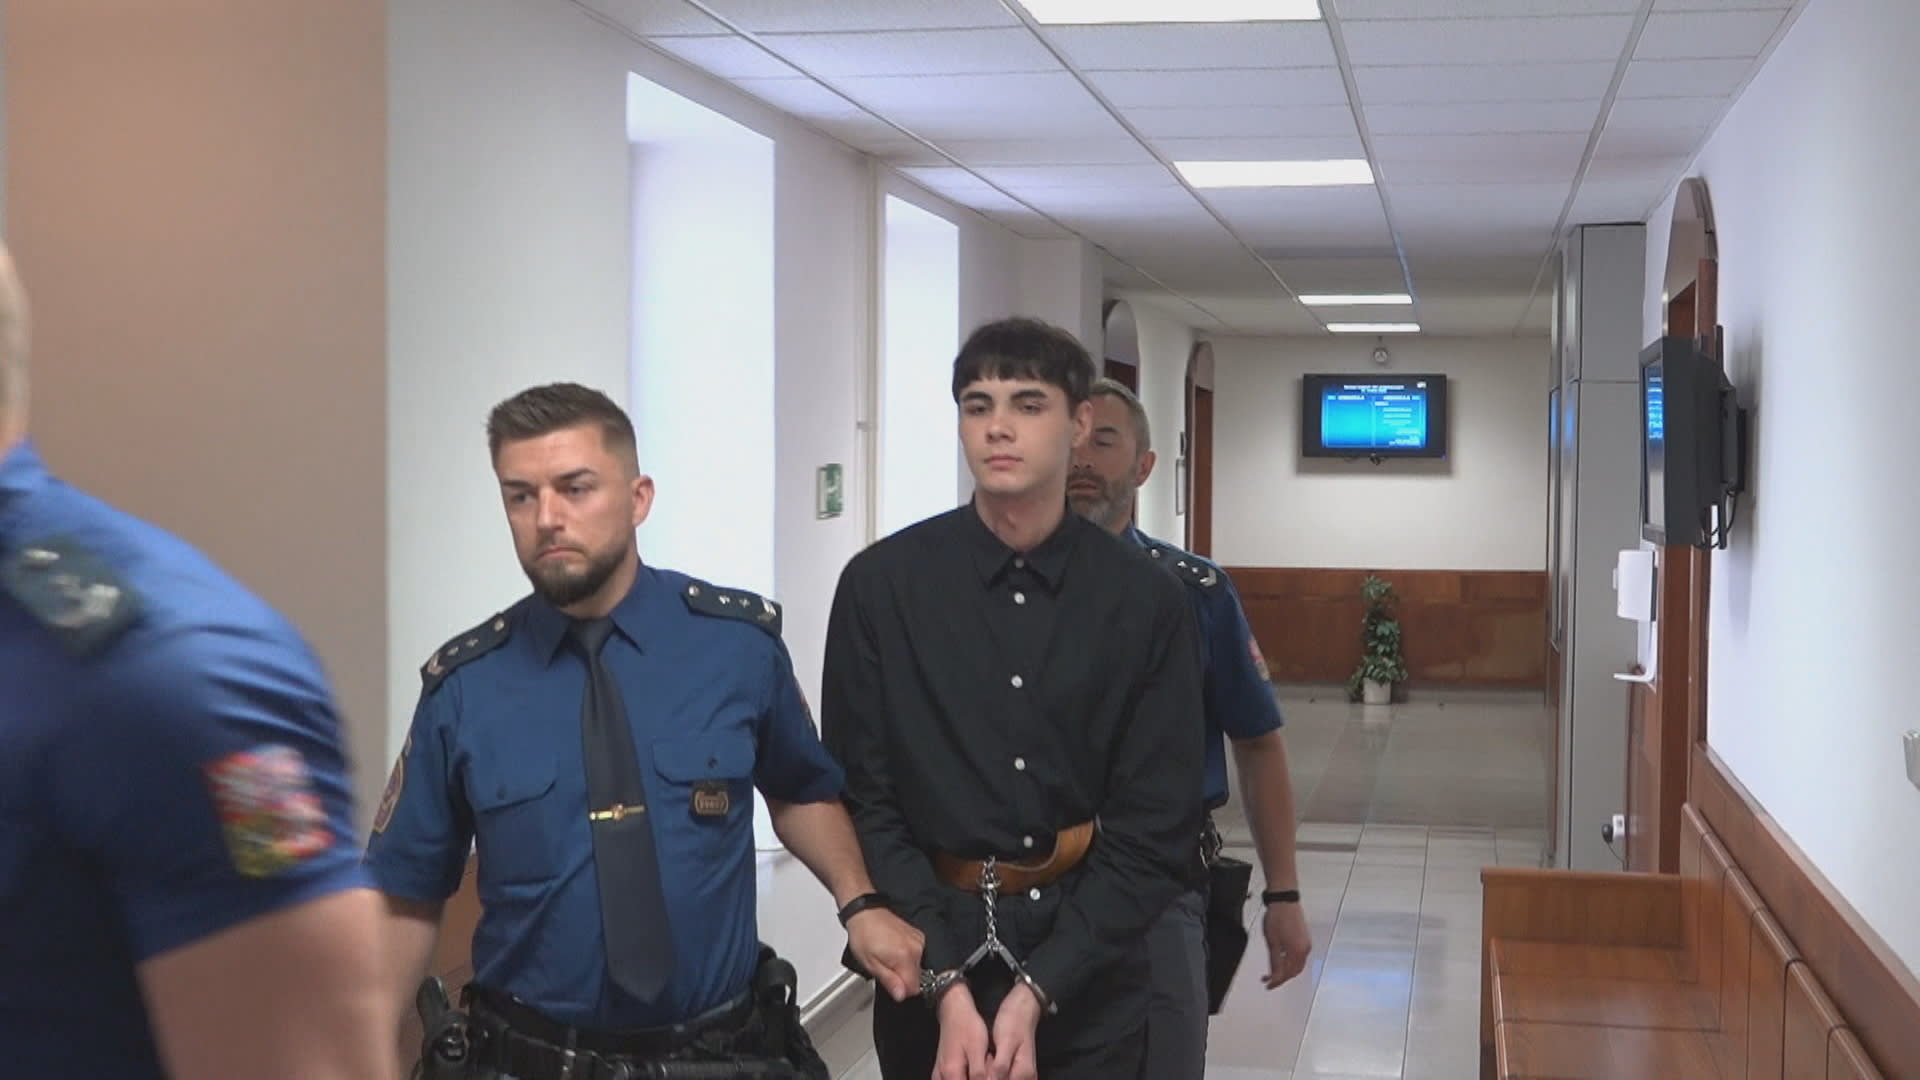 Olomoucký vrchní soud snížil trest pro dvacetiletého Roberta Rouse